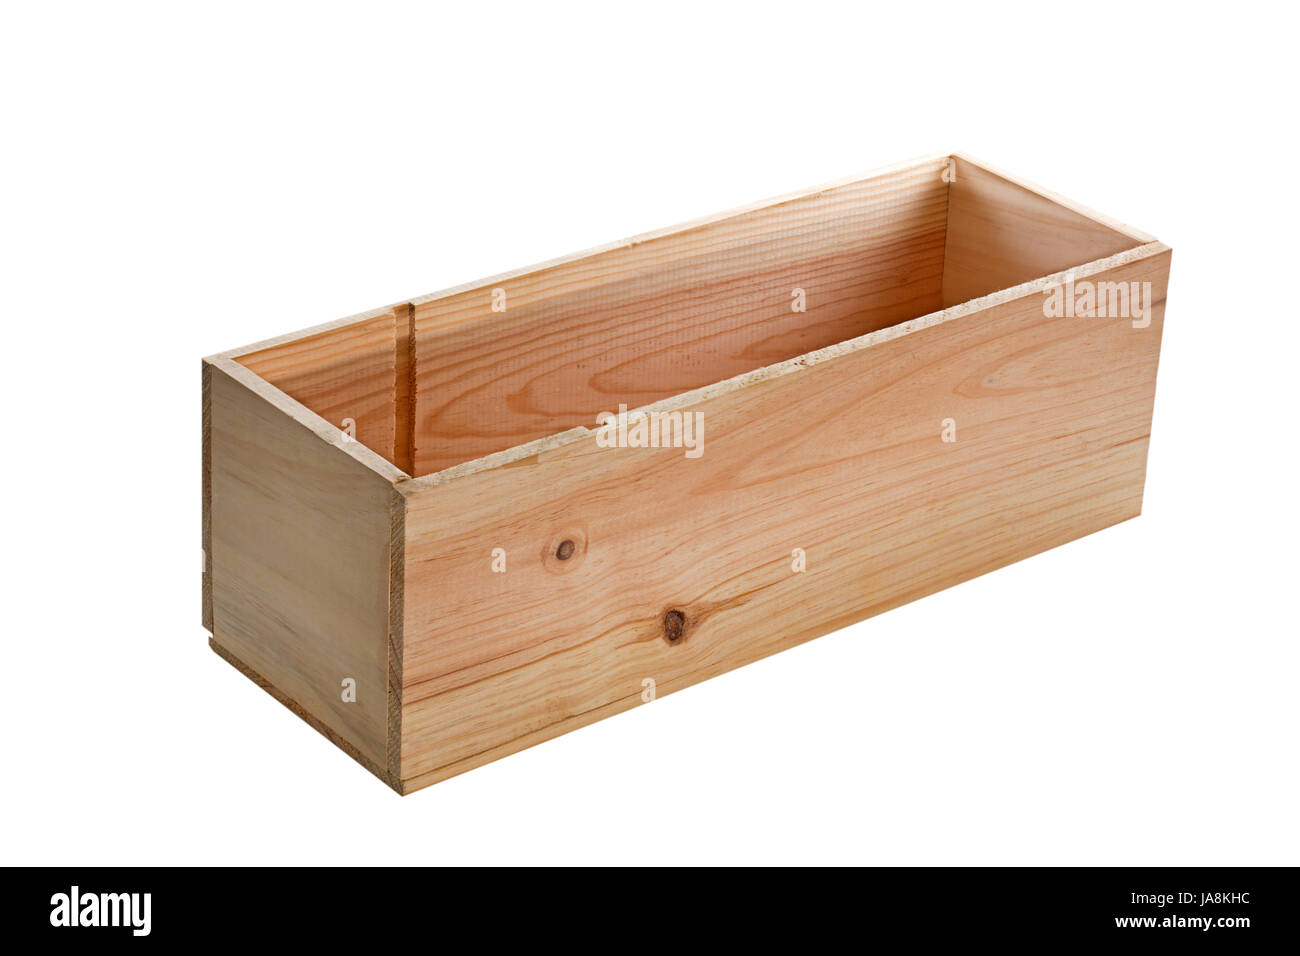 Caja Multiuso de madera con Tapa Corrediza Nº2 Fime